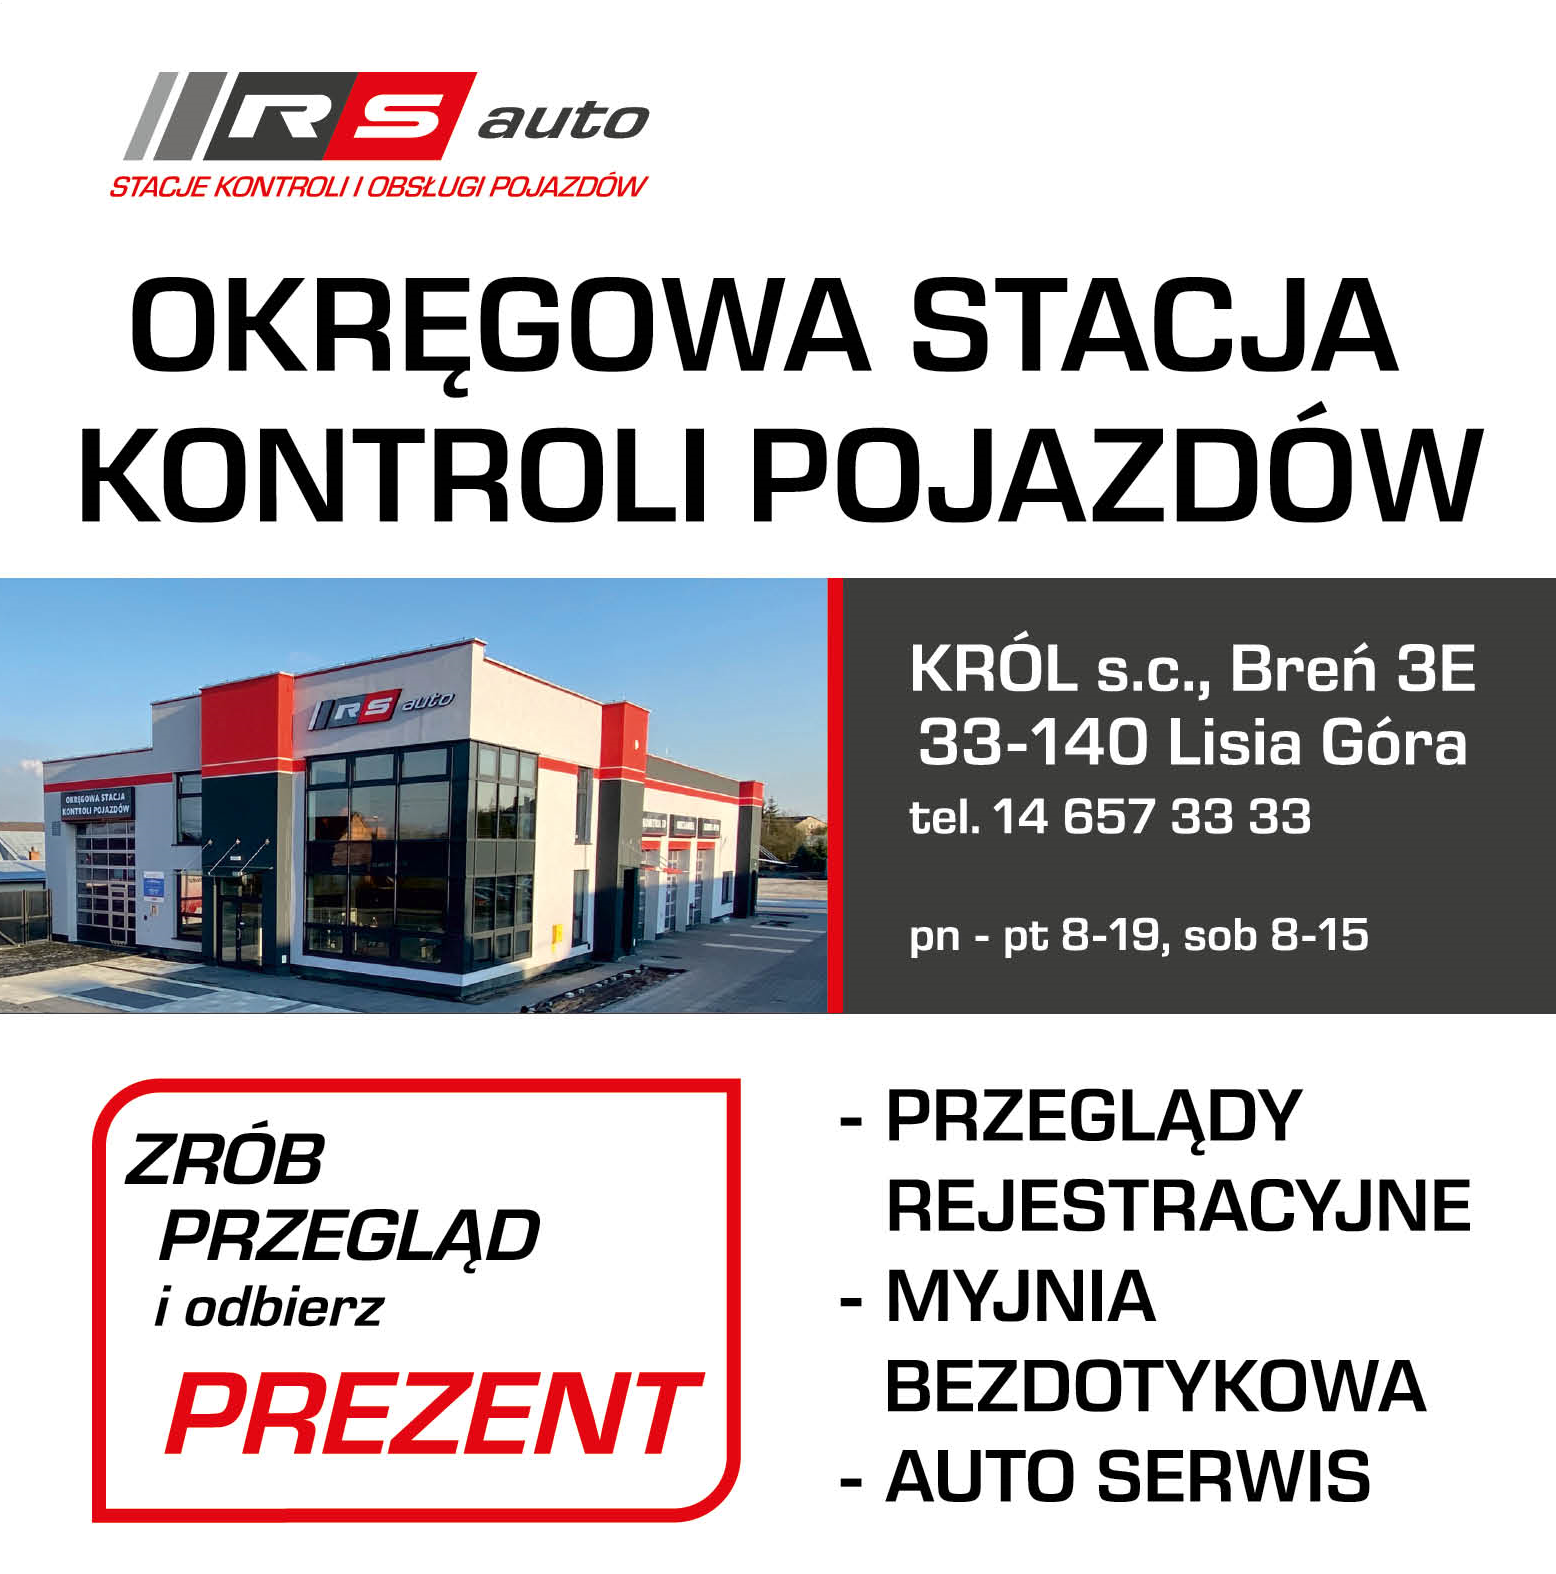 KRÓL s.c. Breń Okręgowa Stacja Kontroli Pojazdów / Przeglądy Rejestracyjne / Myjnia / Auto Serwis